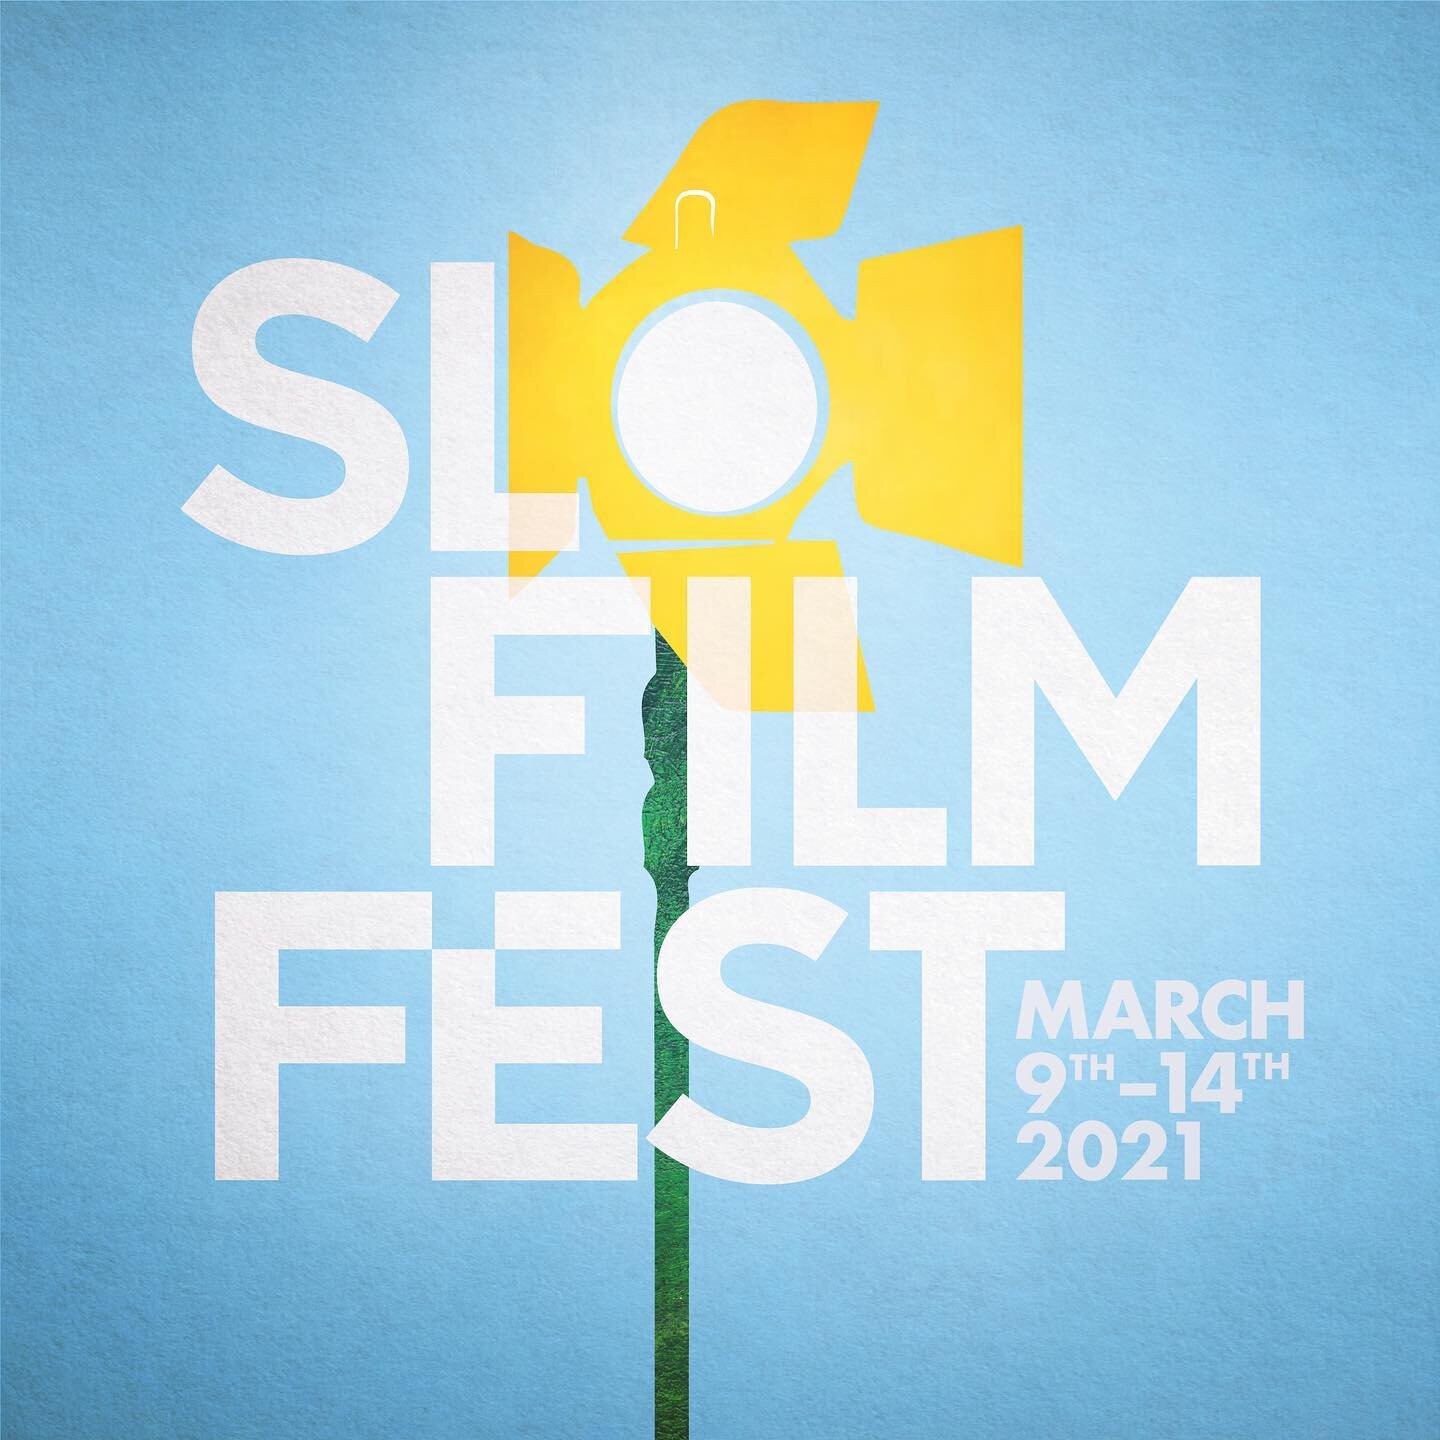 slofilmfest_logo.jpg